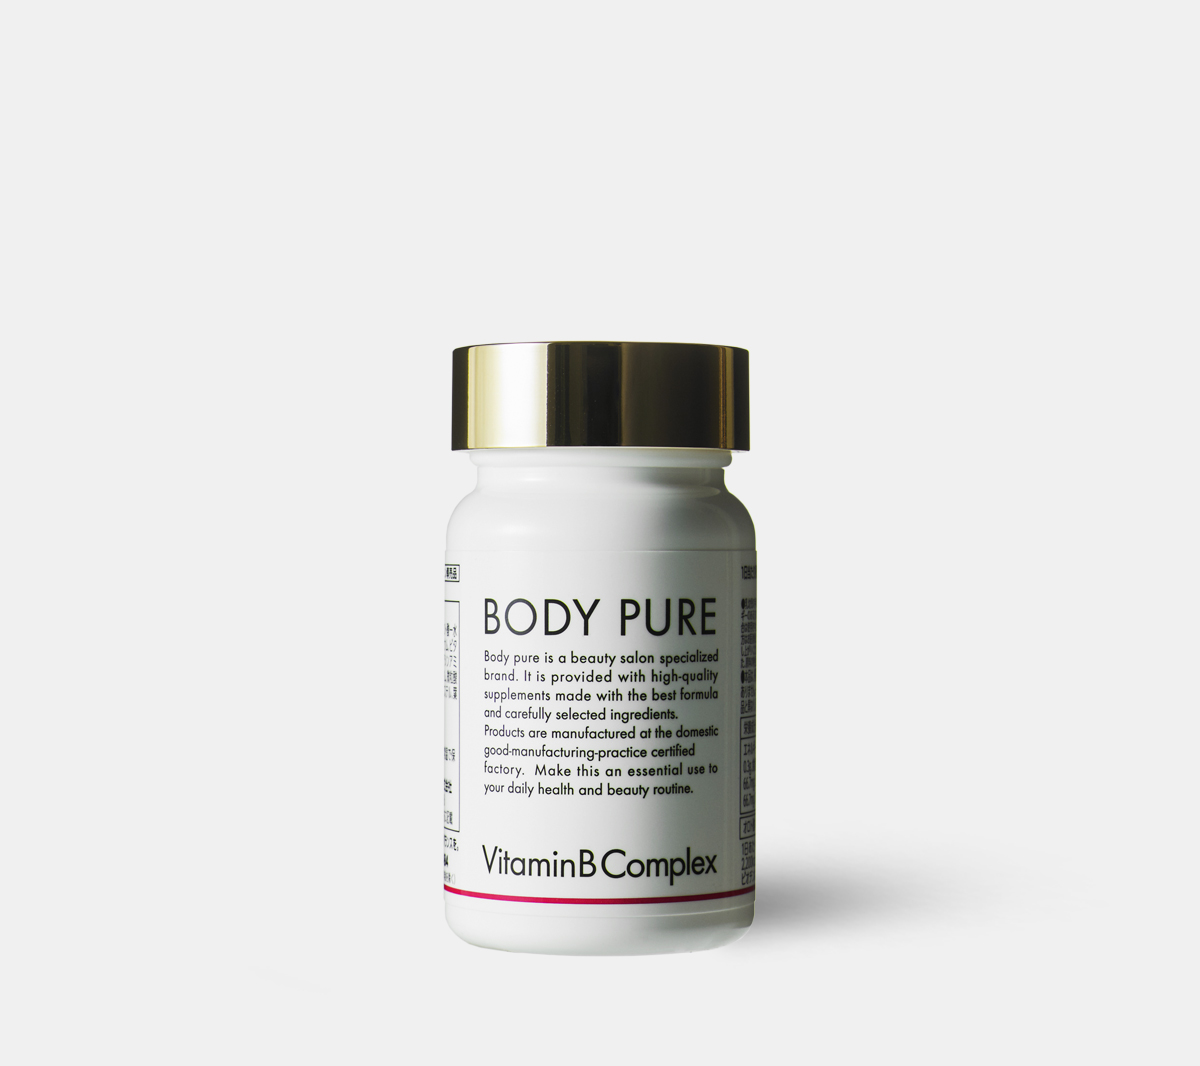 BODY PURE VitaminB Complex